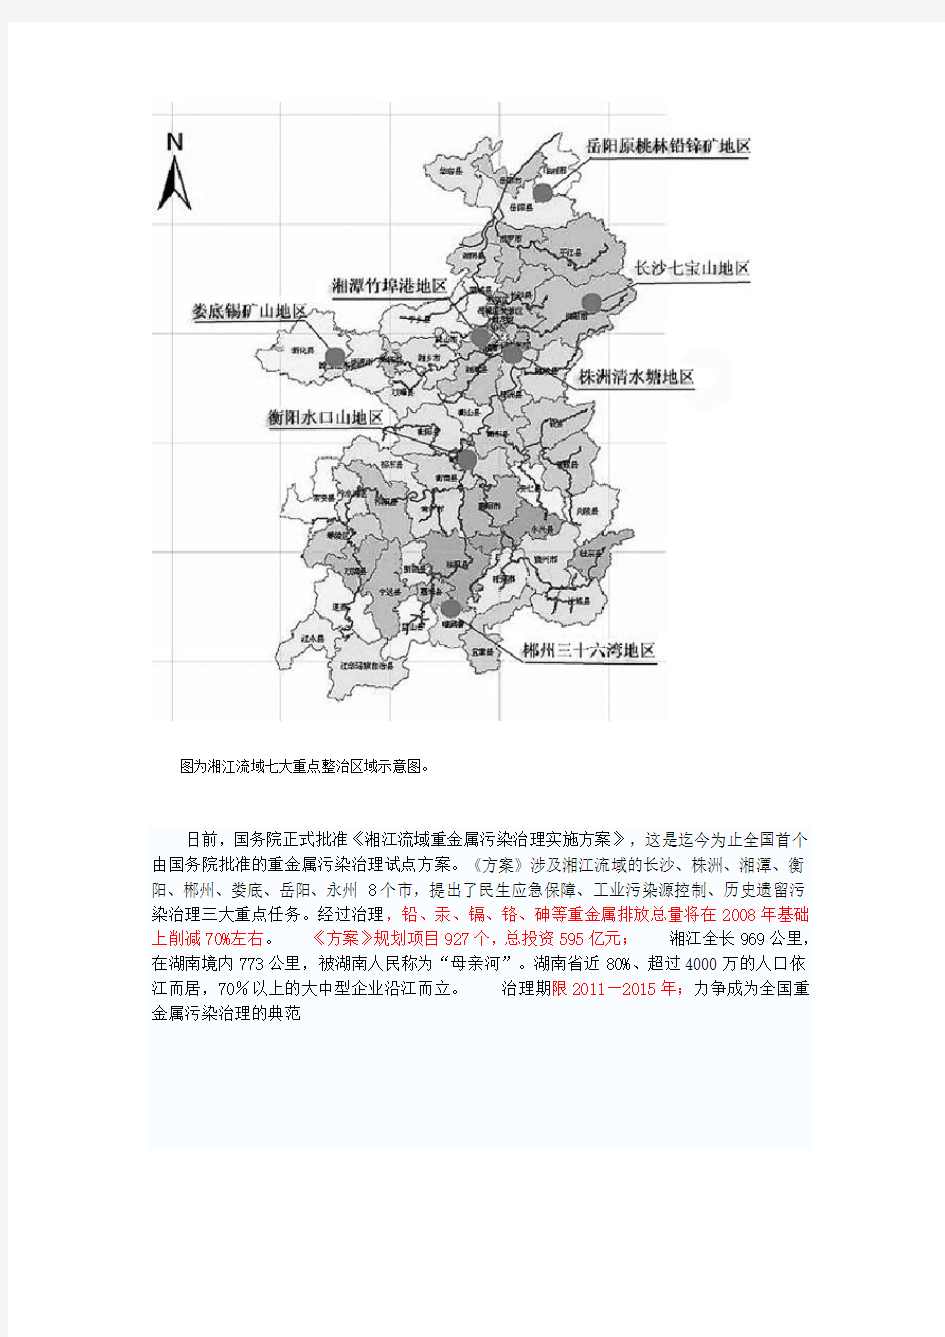 图为湘江流域七大重点整治区域示意图